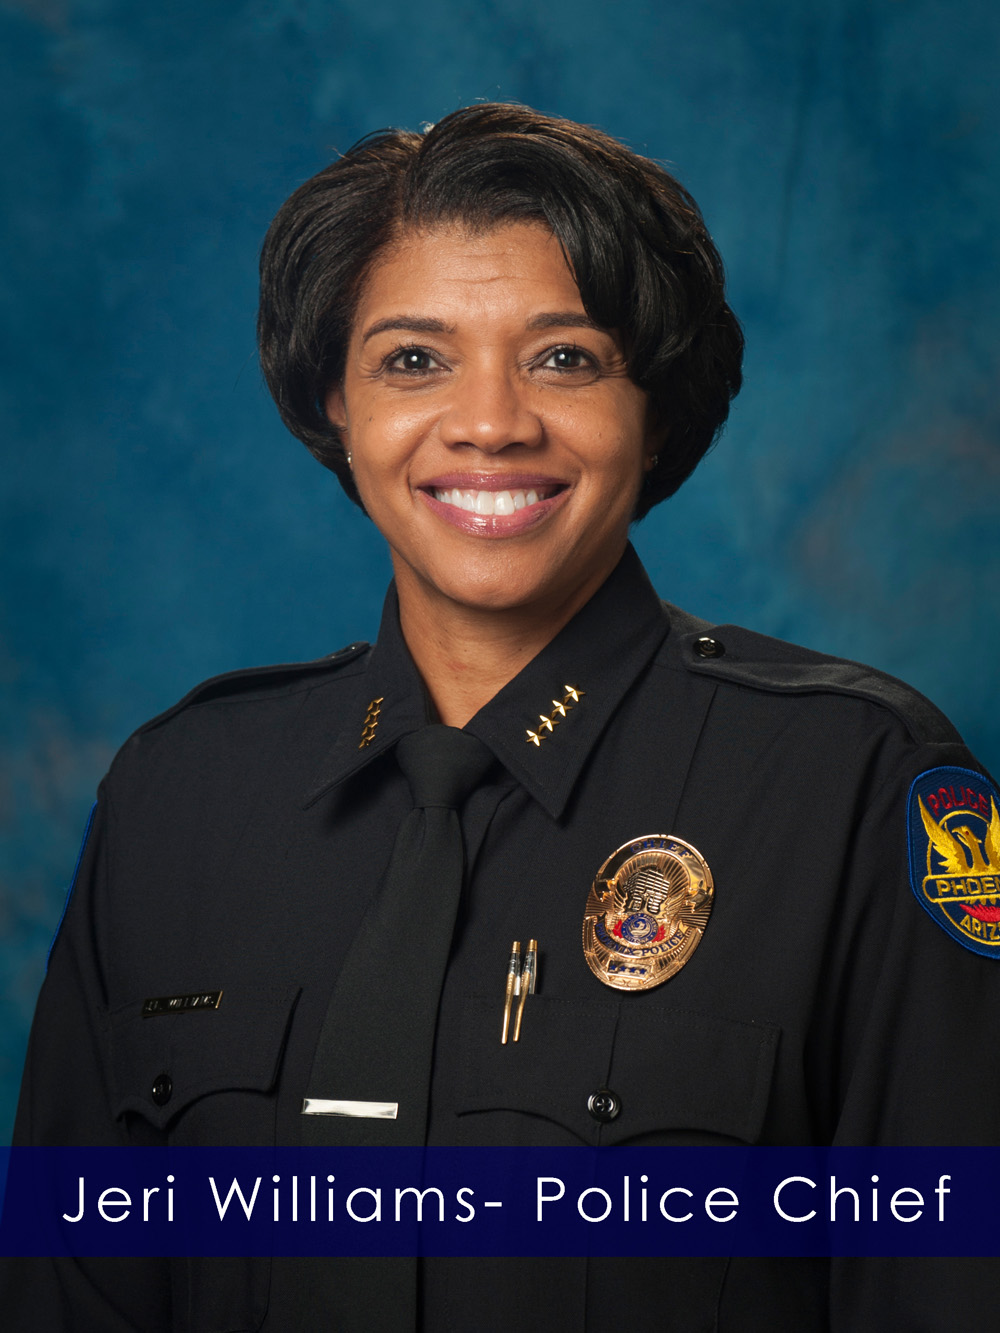 Police Chief Jeri Williams